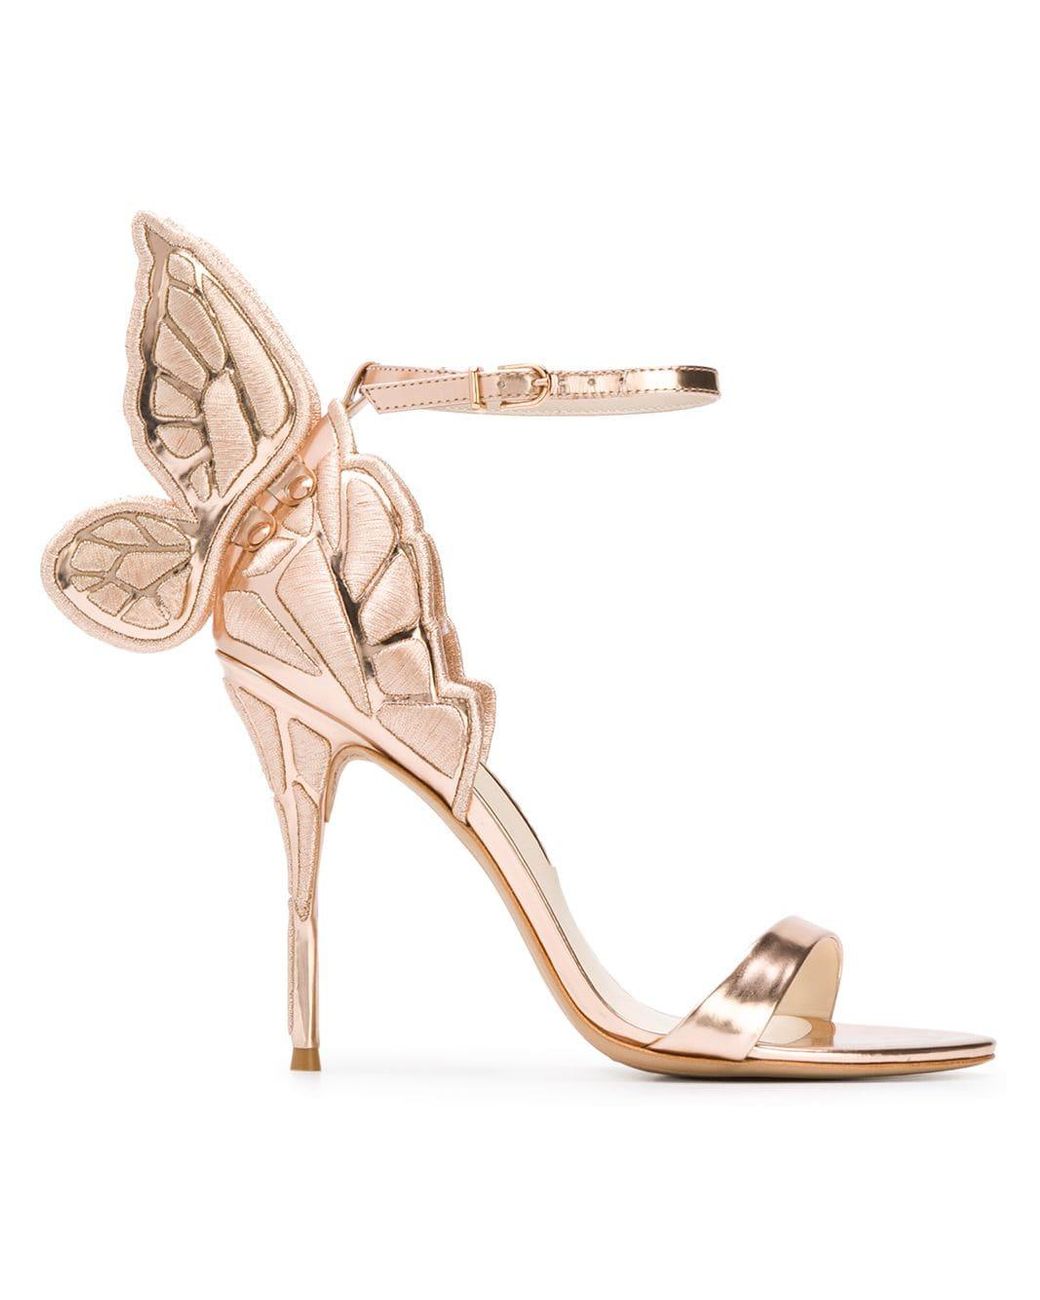 Sophia Webster Butterfly Heel Sandals in Pink | Lyst